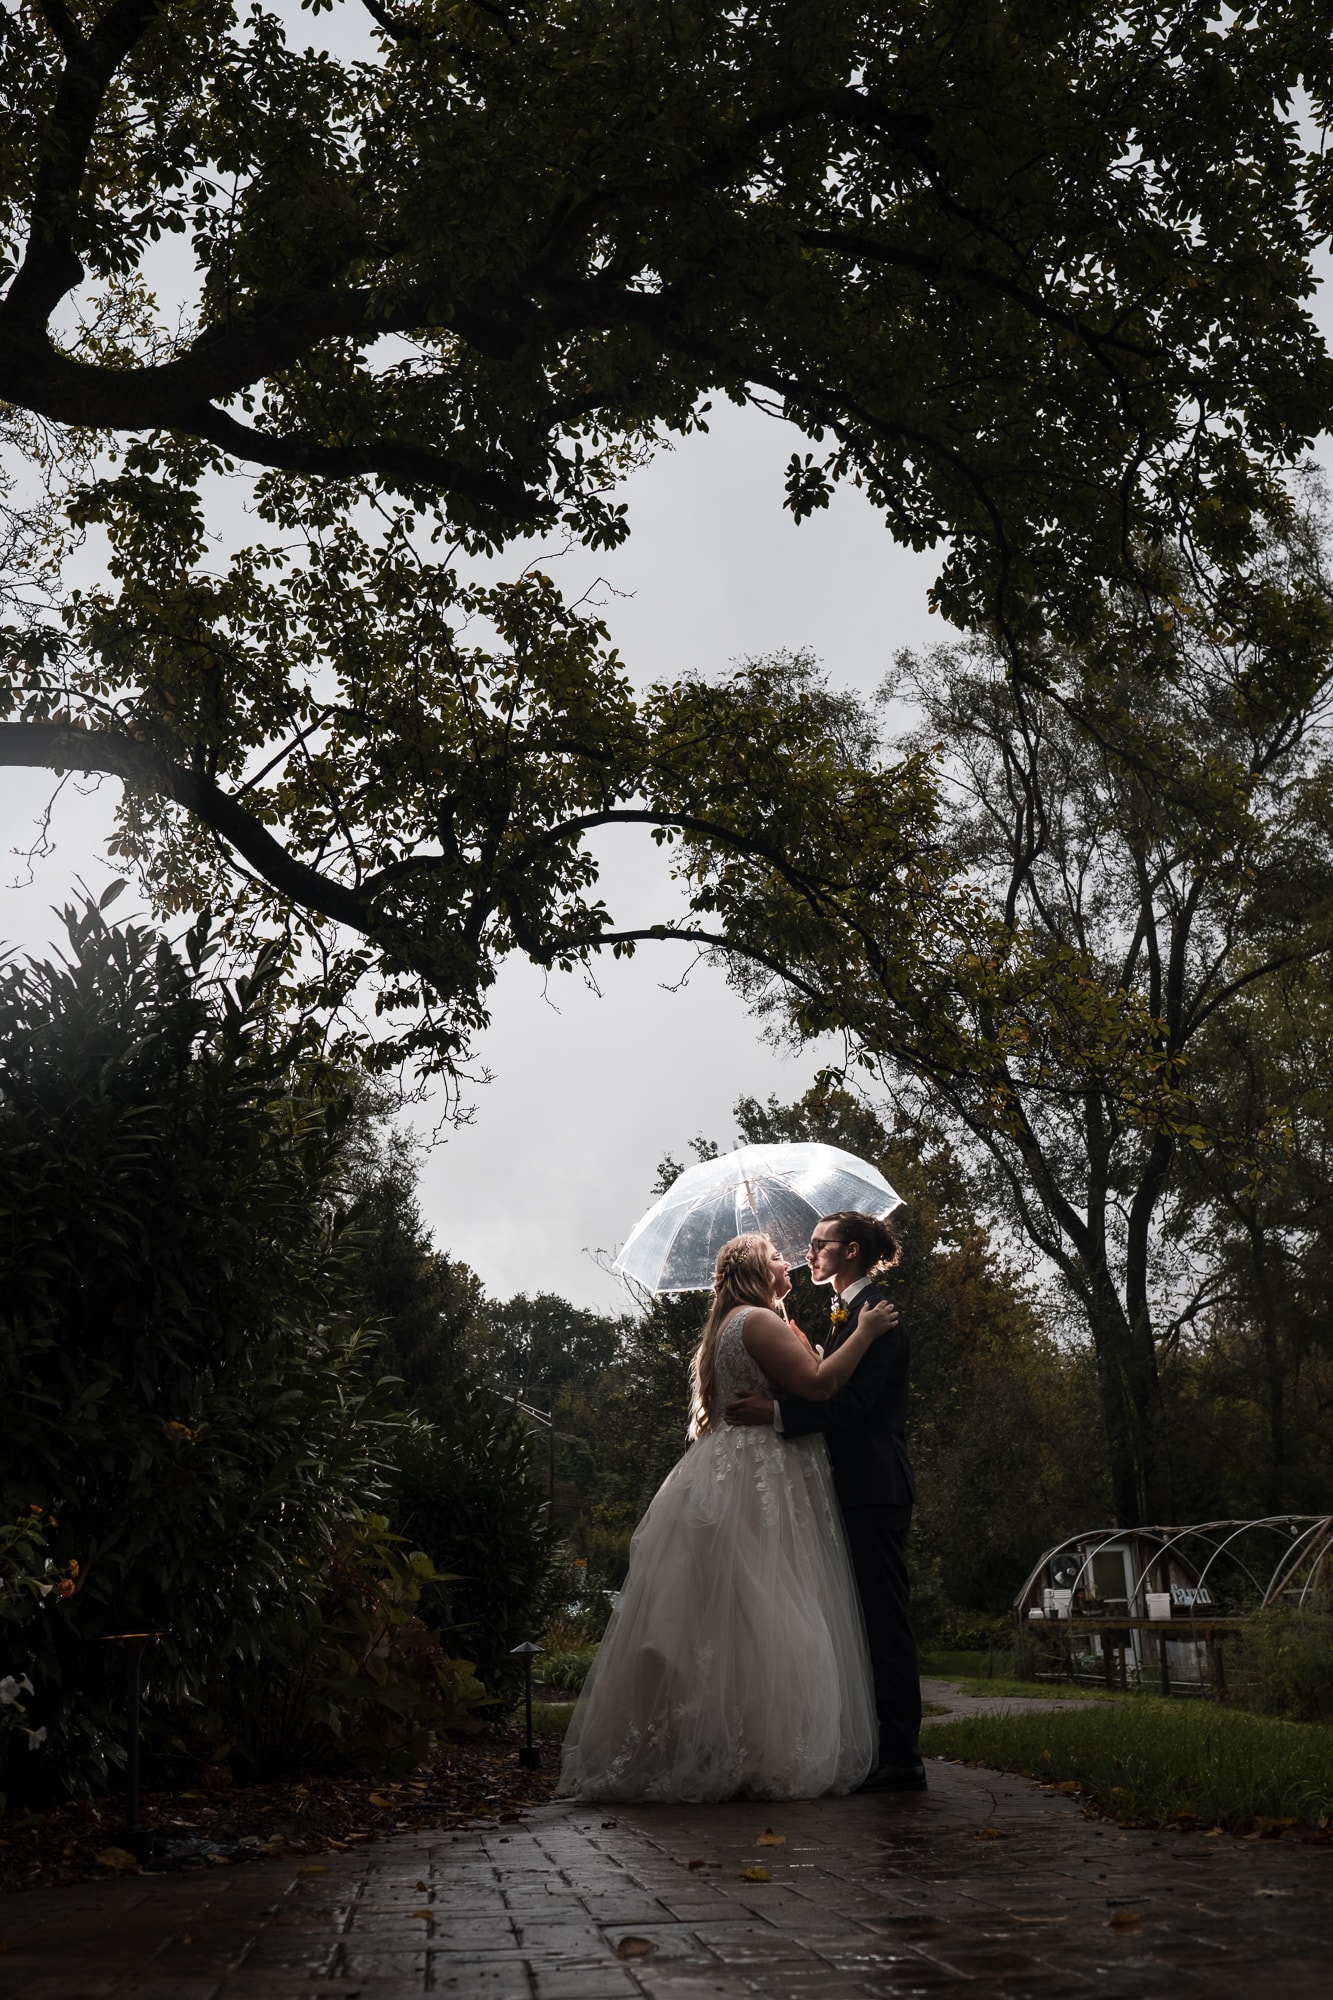 umbrella picture at wedding